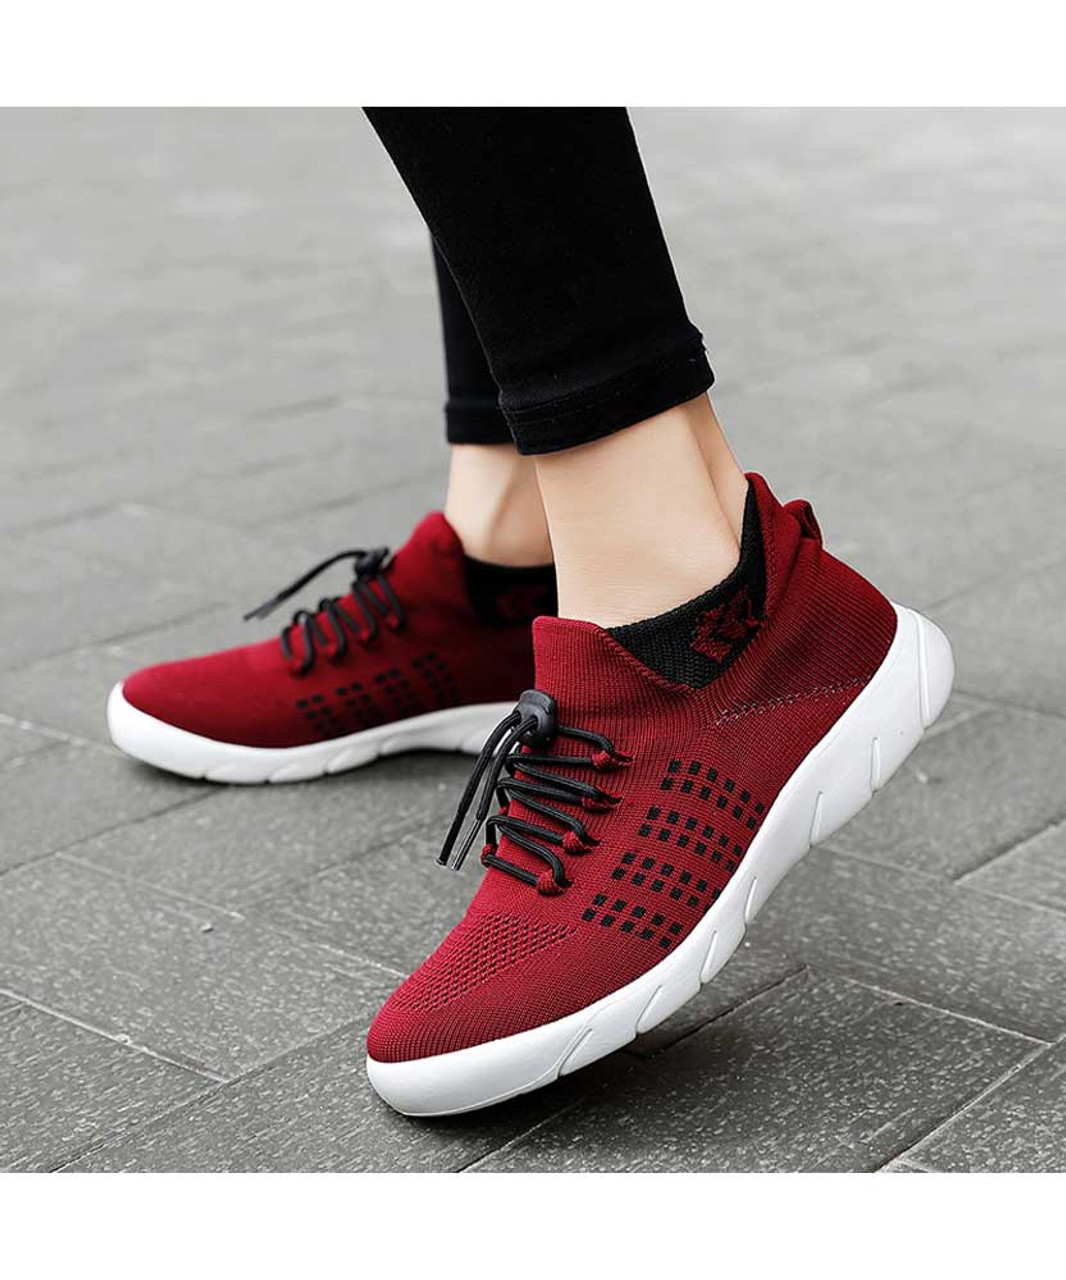 Red drawstring lace flyknit pattern shoe sneaker | Womens shoe sneakers ...